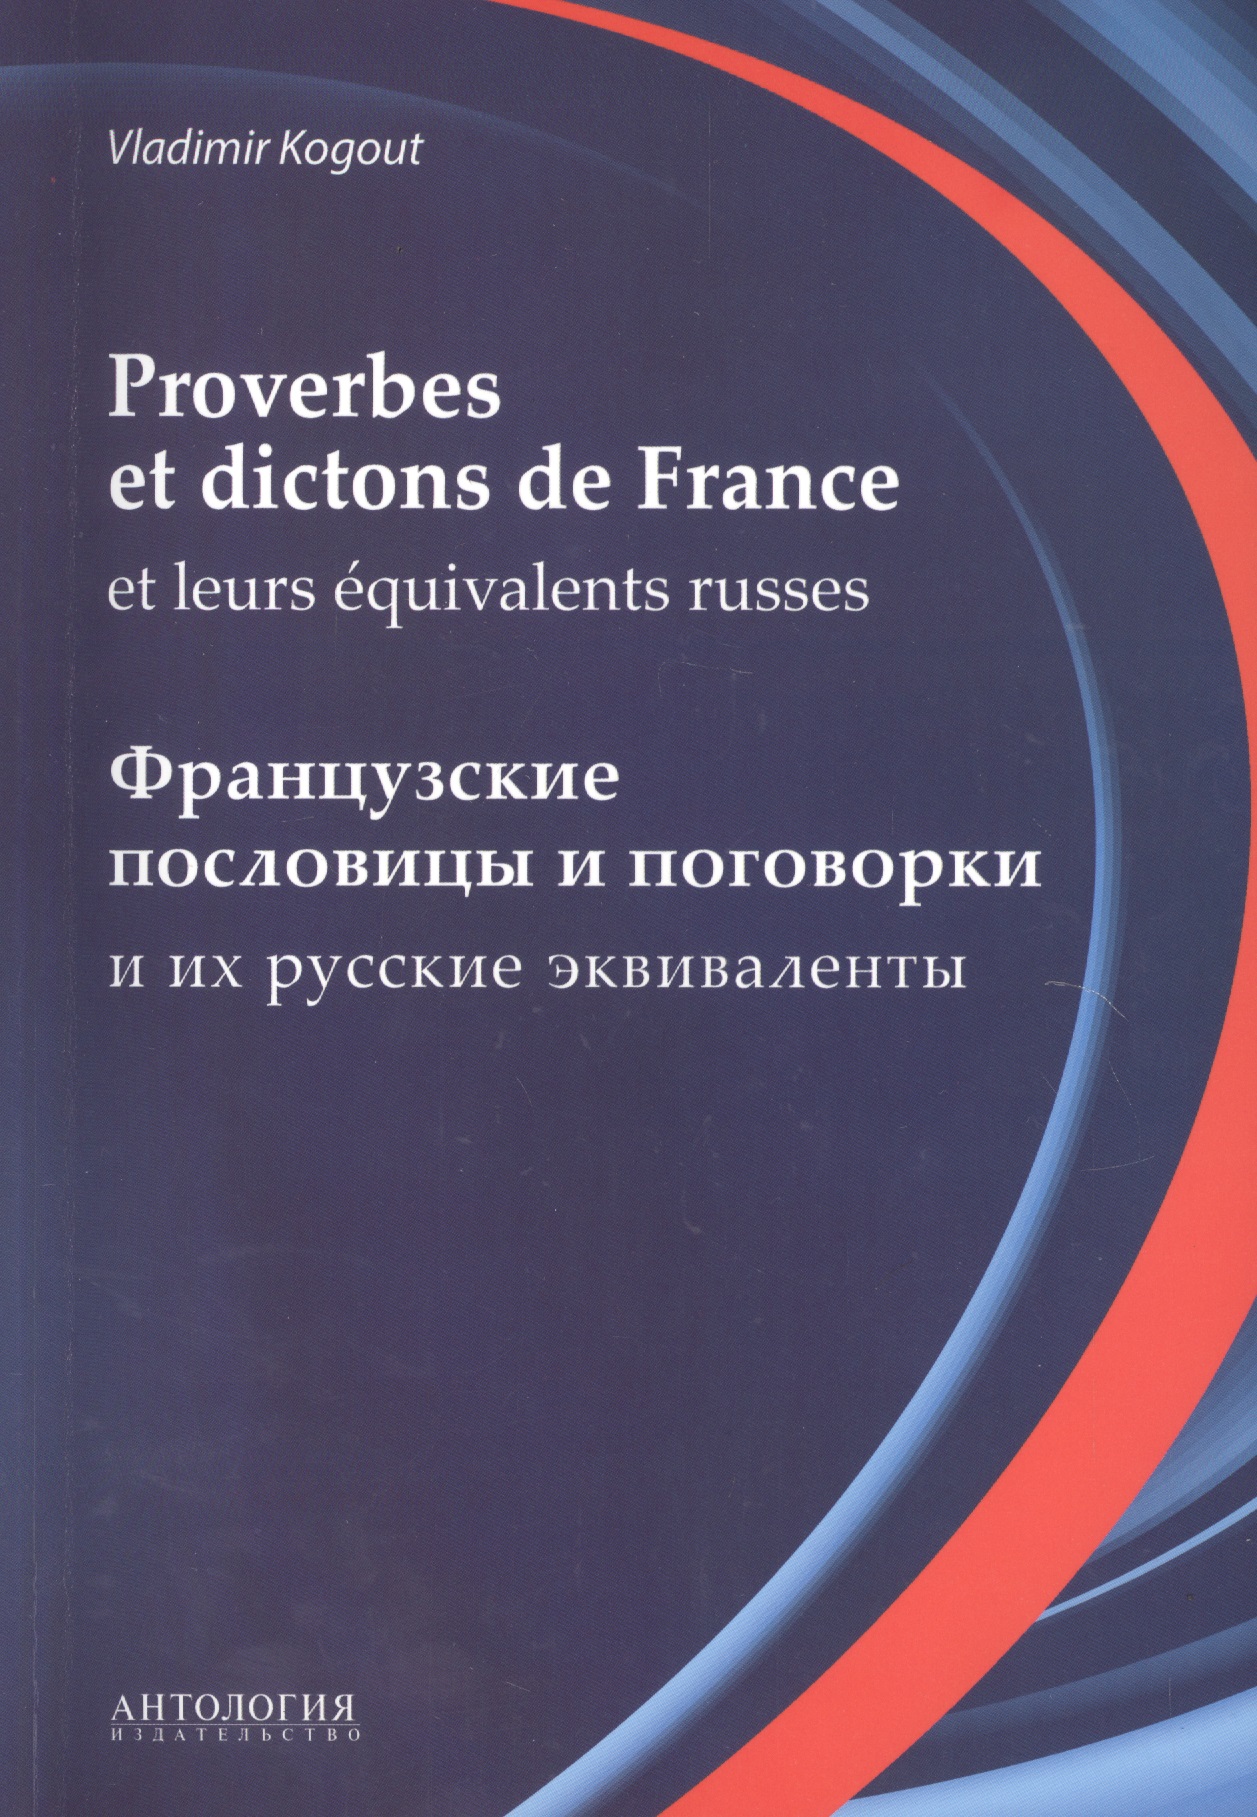      (Proverbes et dictons de France et leurs equivalents russes